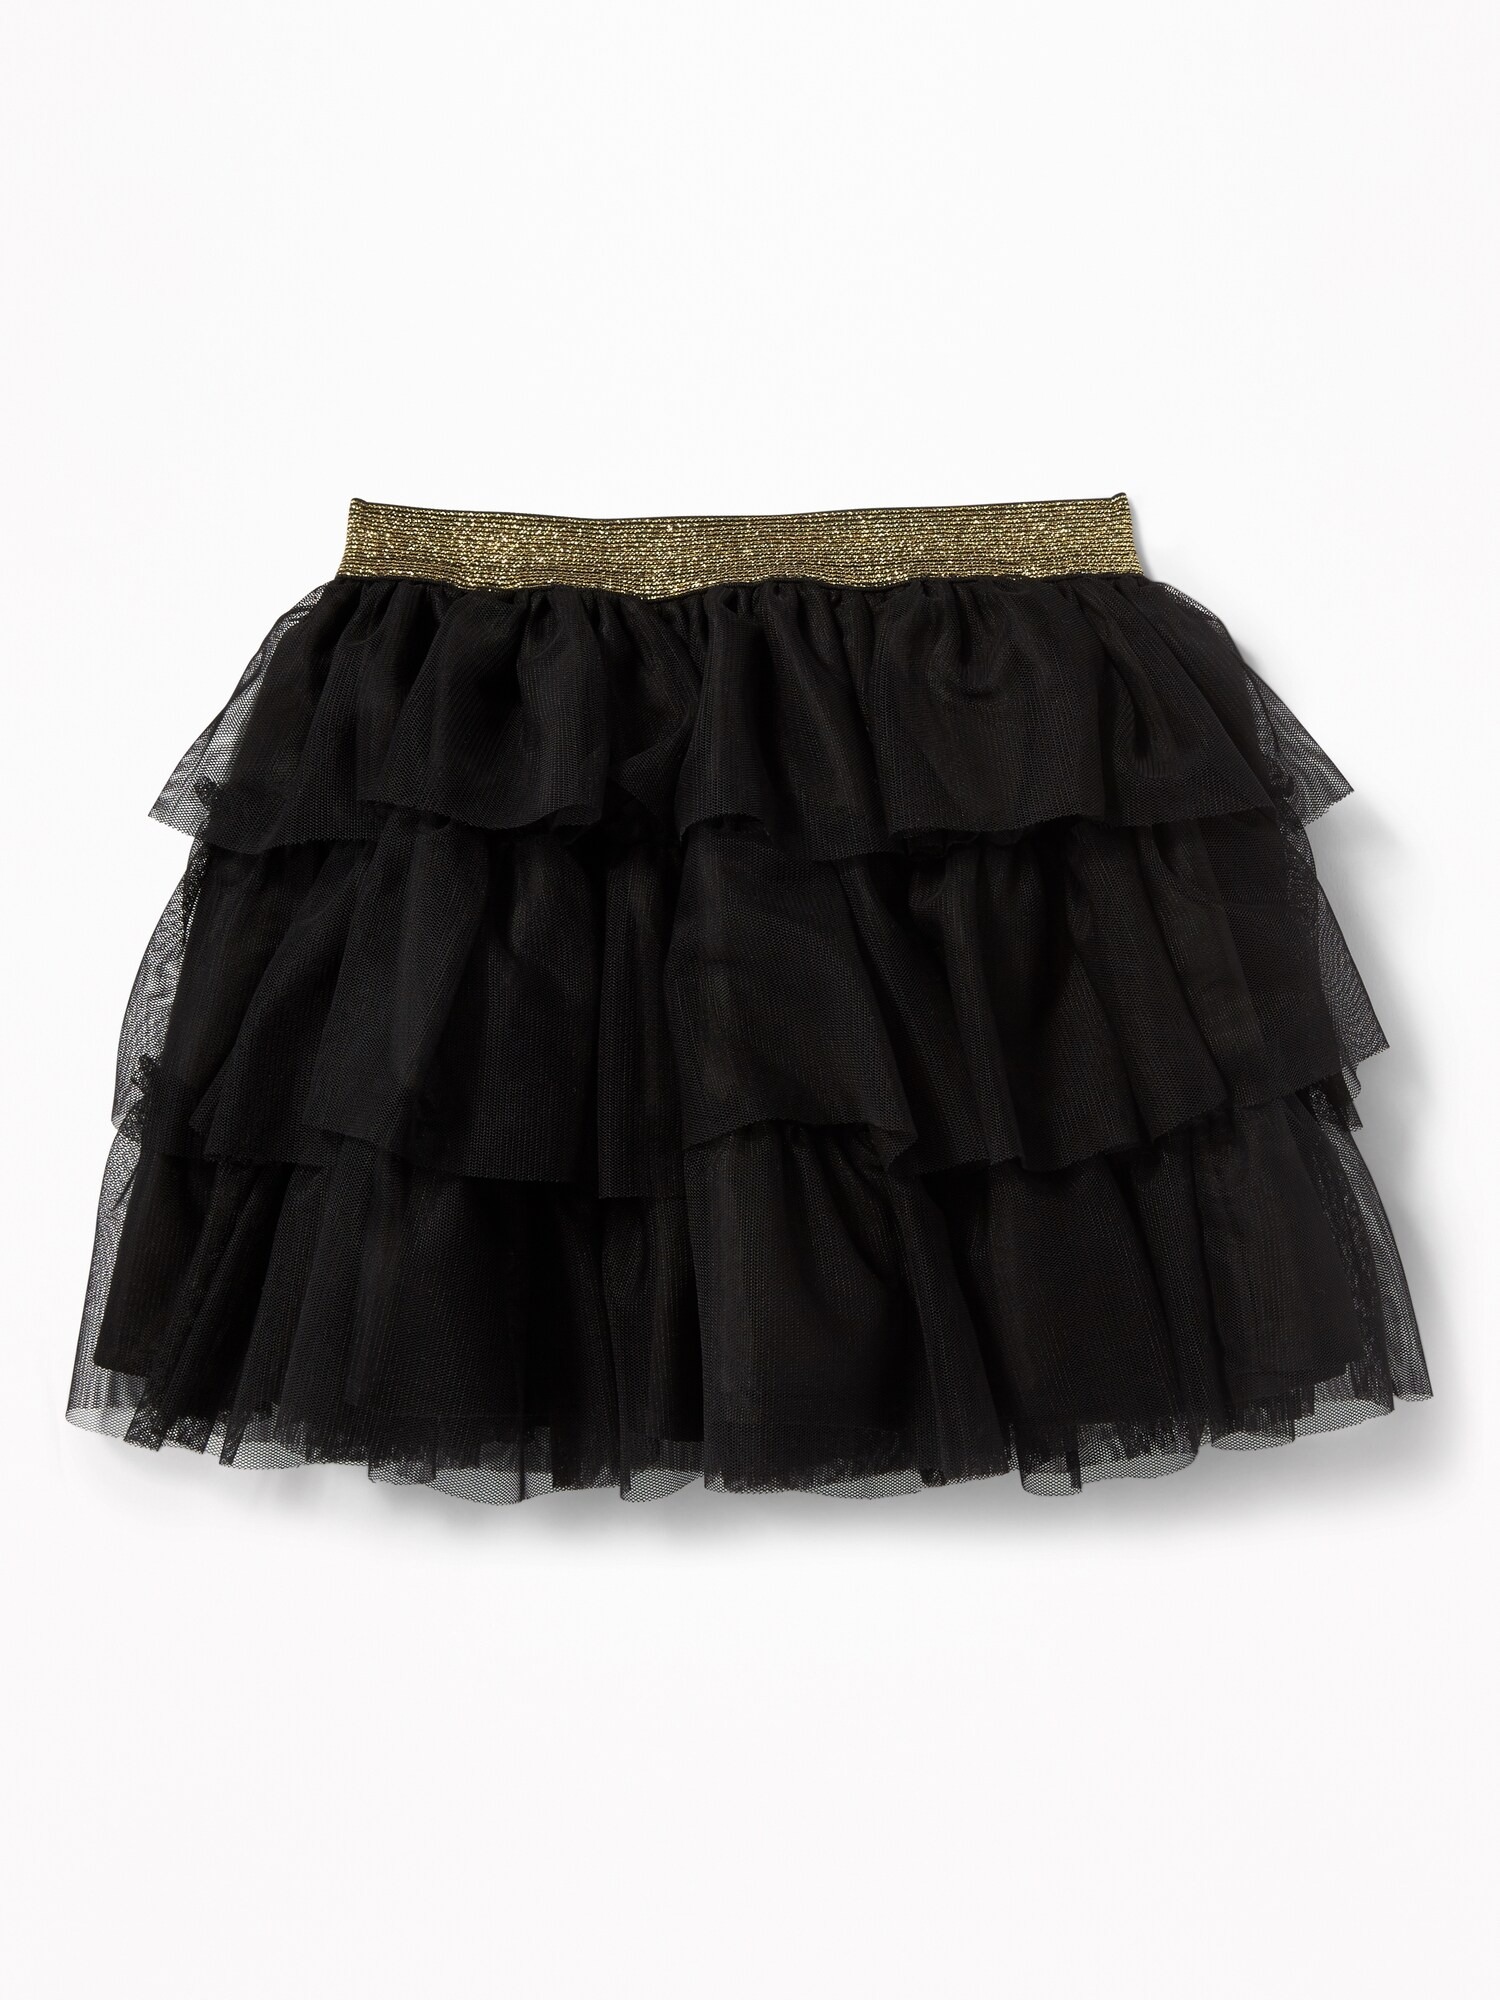 Sparkle-Waist Tutu Skirt for Toddler Girls | Old Navy